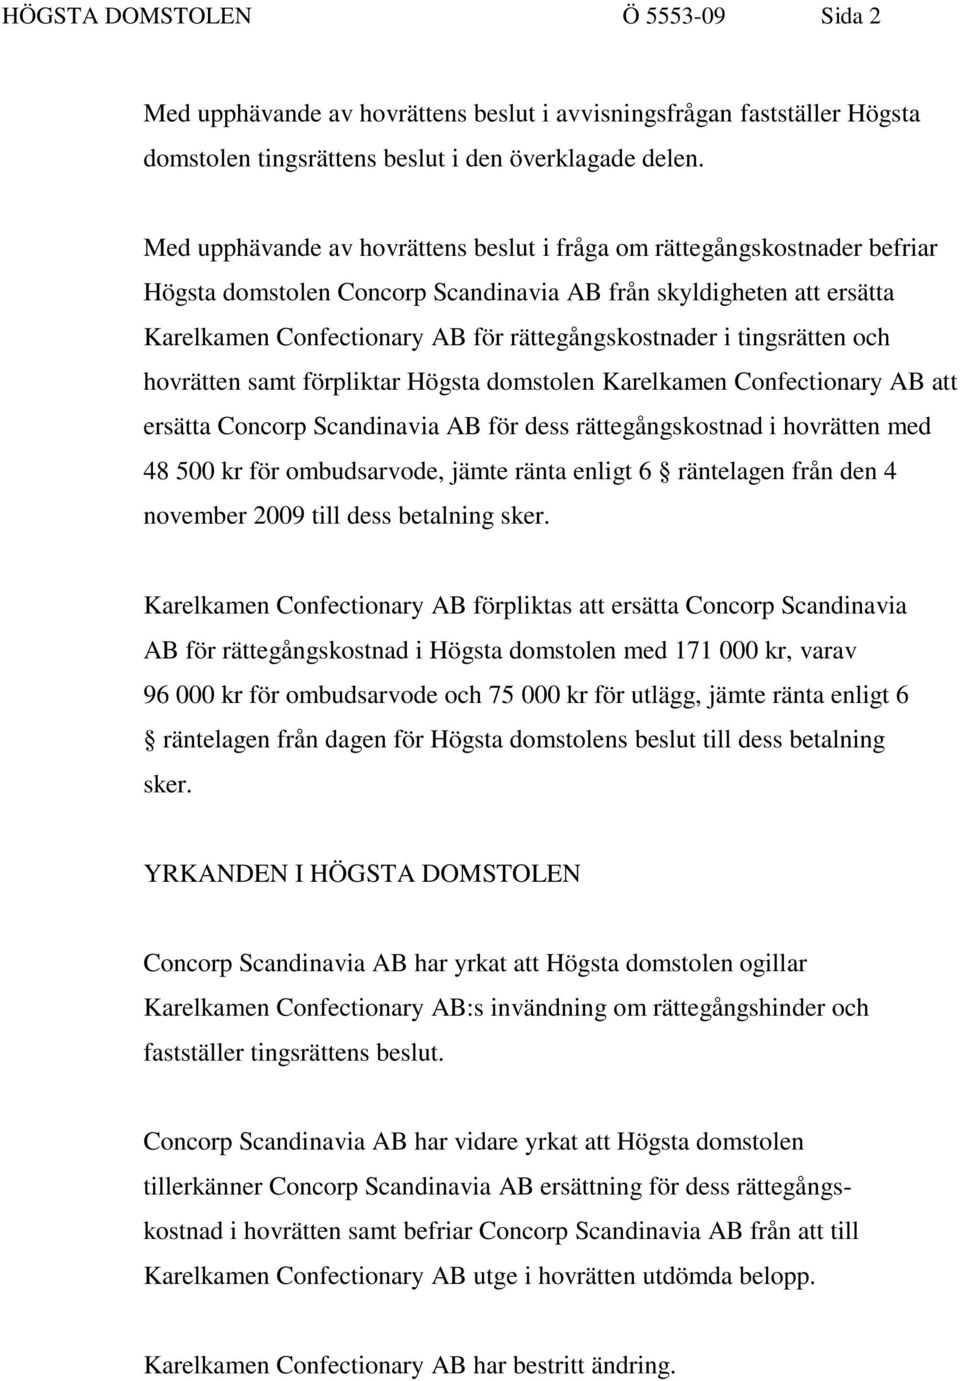 tingsrätten och hovrätten samt förpliktar Högsta domstolen Karelkamen Confectionary AB att ersätta Concorp Scandinavia AB för dess rättegångskostnad i hovrätten med 48 500 kr för ombudsarvode, jämte